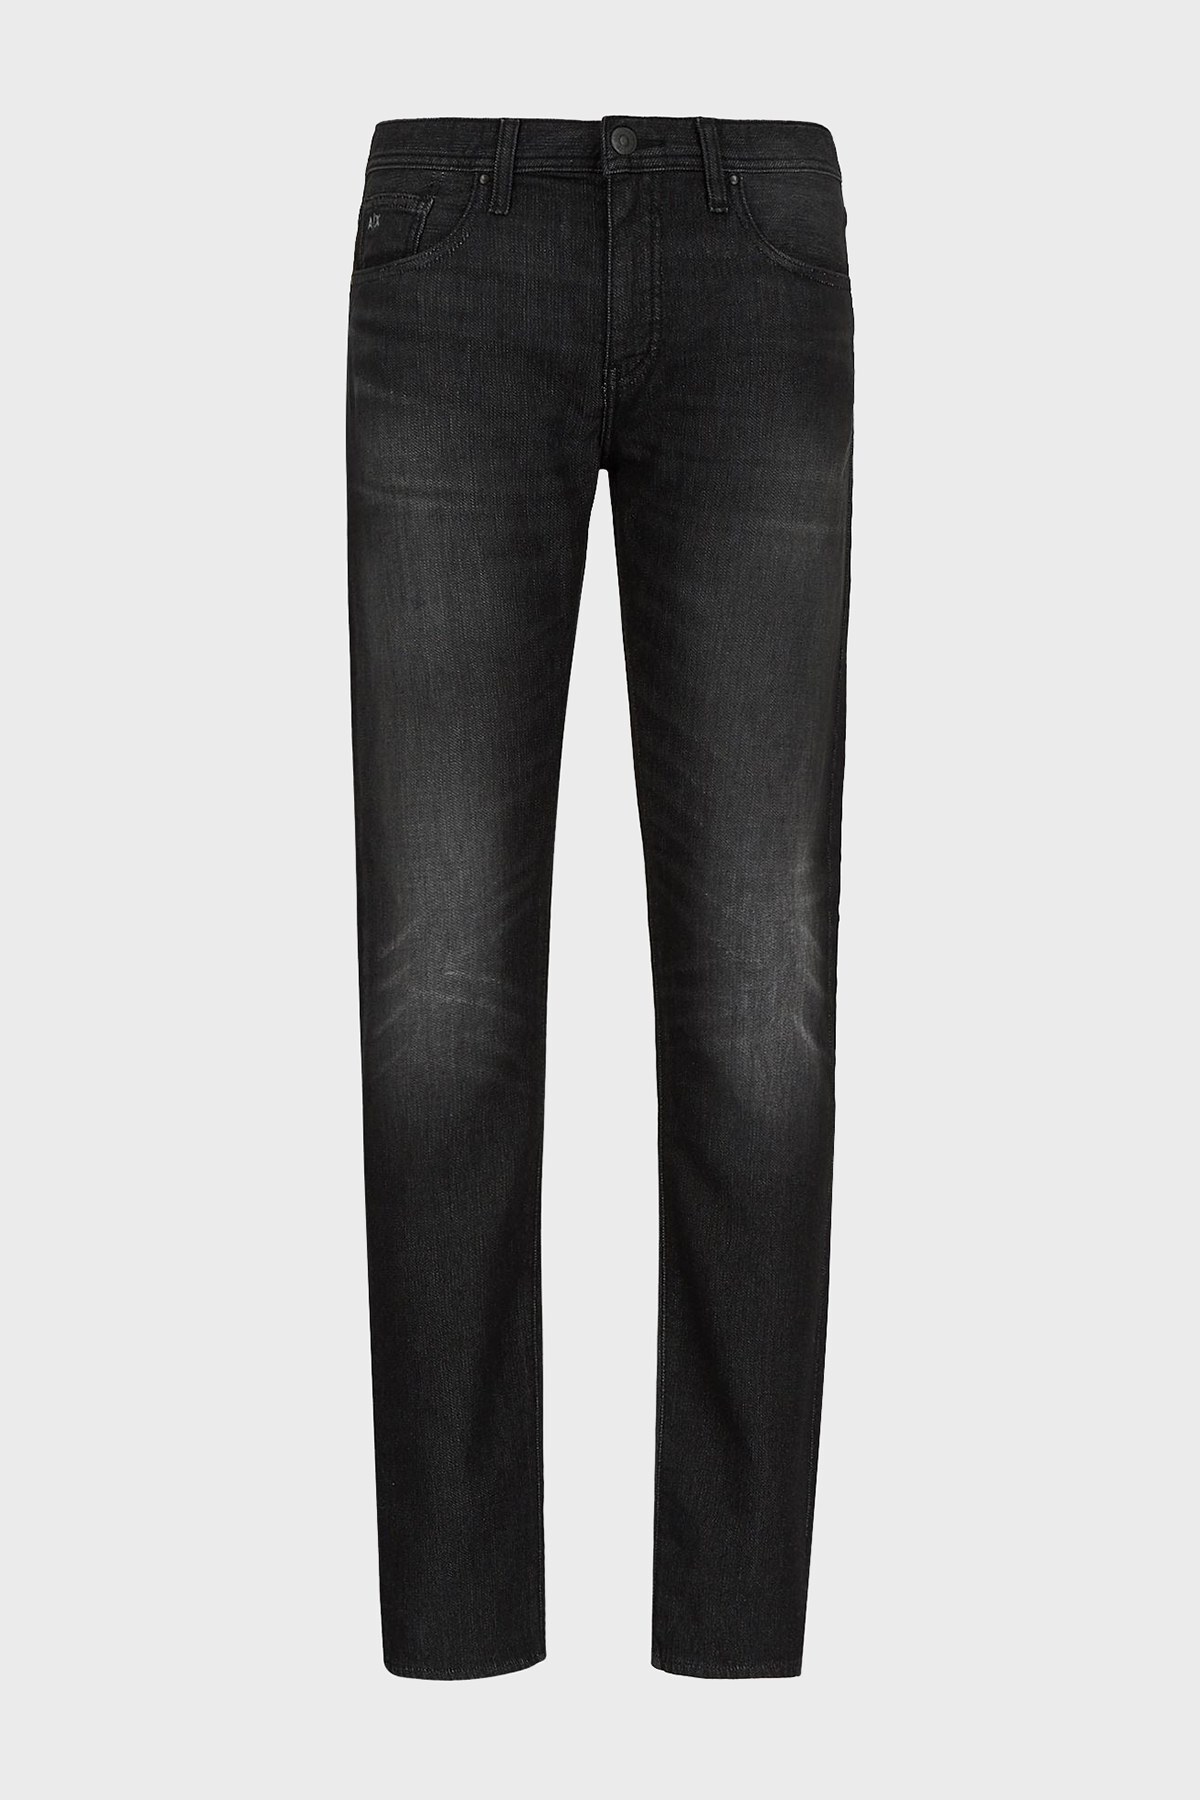 Armani Exchange Pamuklu Slim Fit J13 Jeans Erkek Kot Pantolon 6KZJ13 Z5P6Z 0204 SIYAH